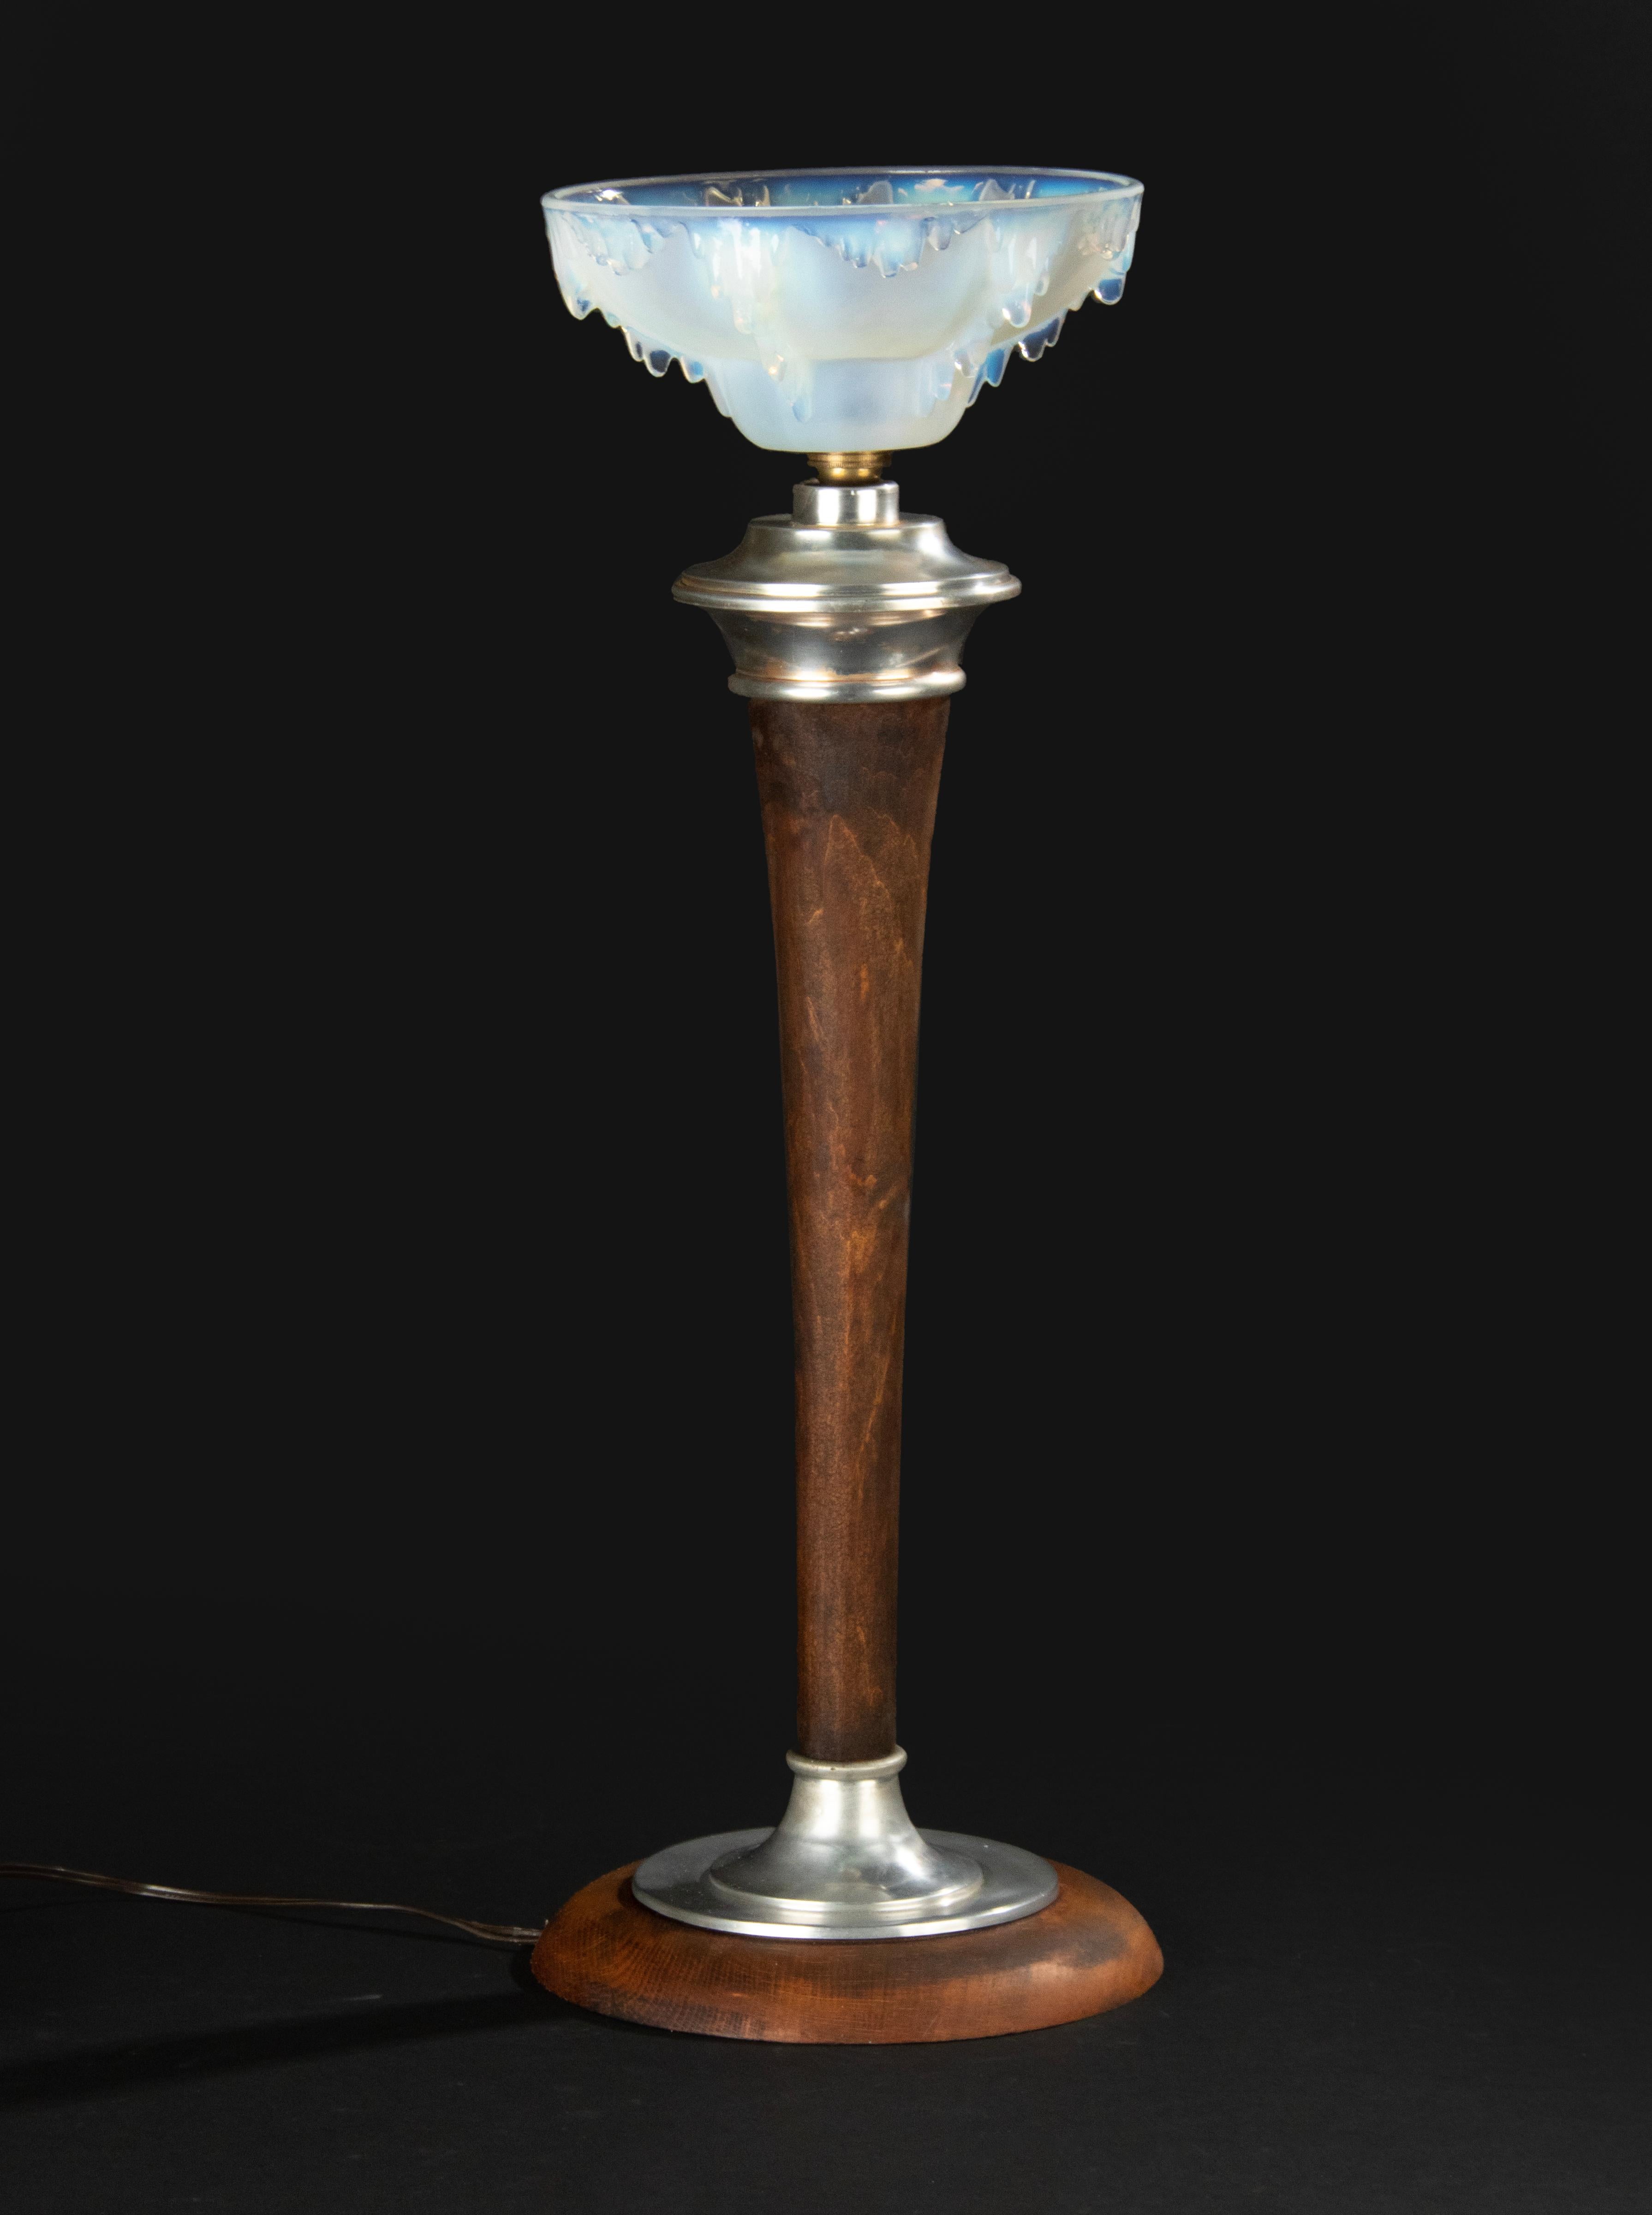 Grande lampe de table Art déco en bois de hêtre et métal nickelé. Sur le dessus, un abat-jour en verre moulé bleu opalescent dans le style d'Ezan. Il n'y a pas de signature. Douille de lampe à baïonnette. La lampe est en état de marche. La verrerie